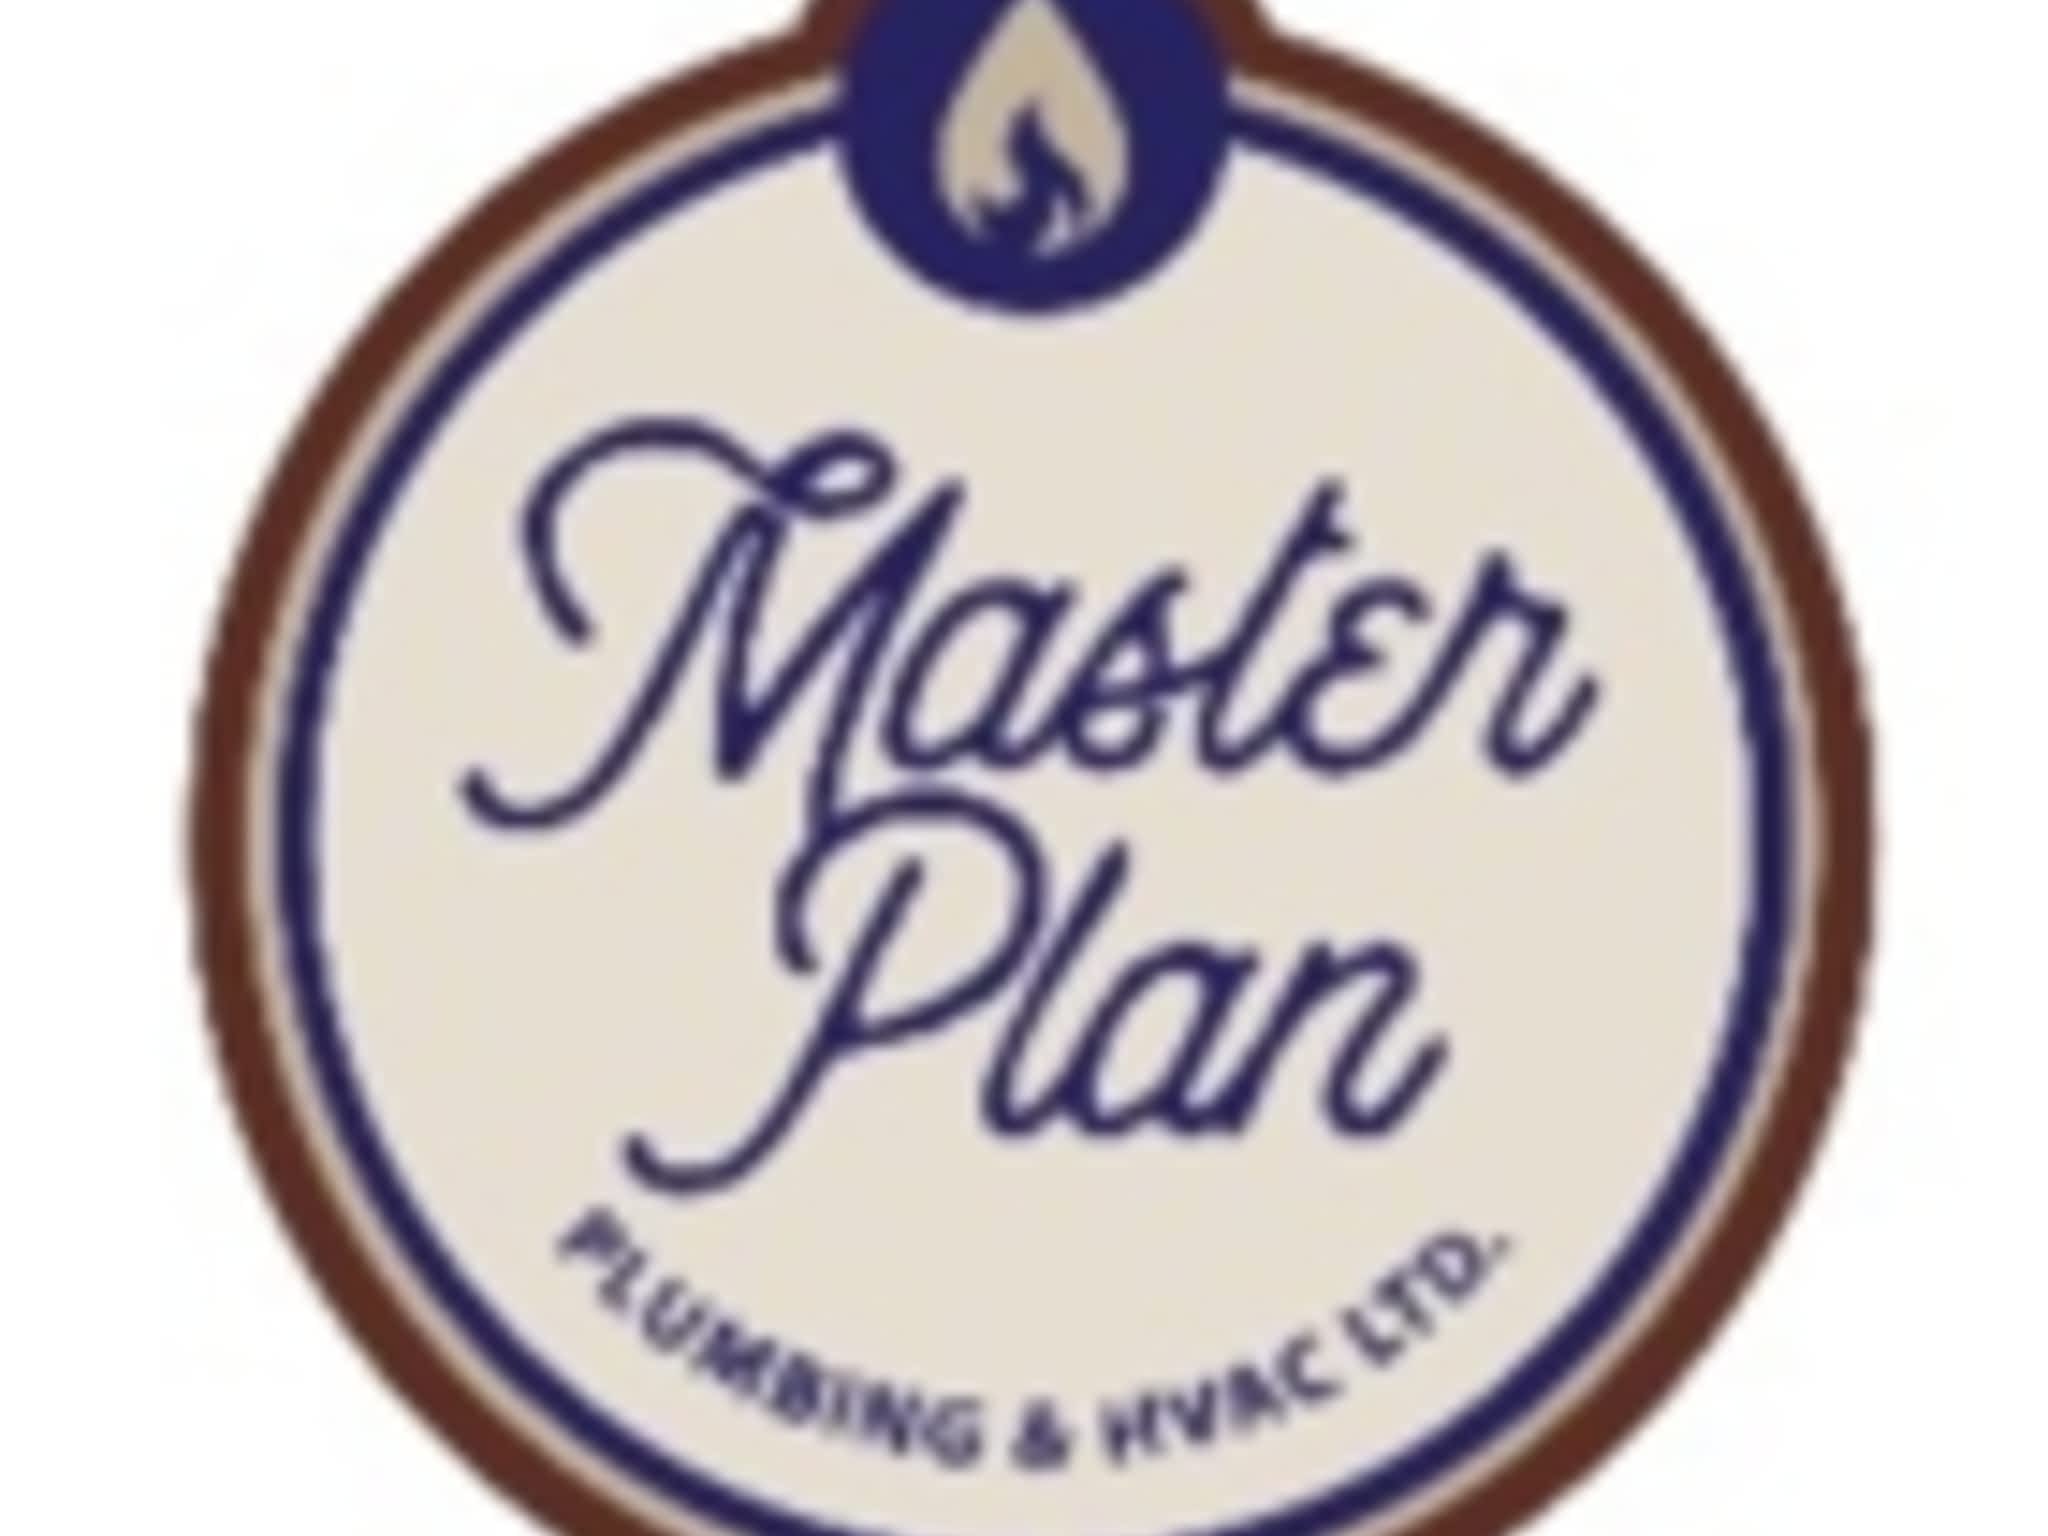 photo Master Plan Plumbing and HVAC Ltd.